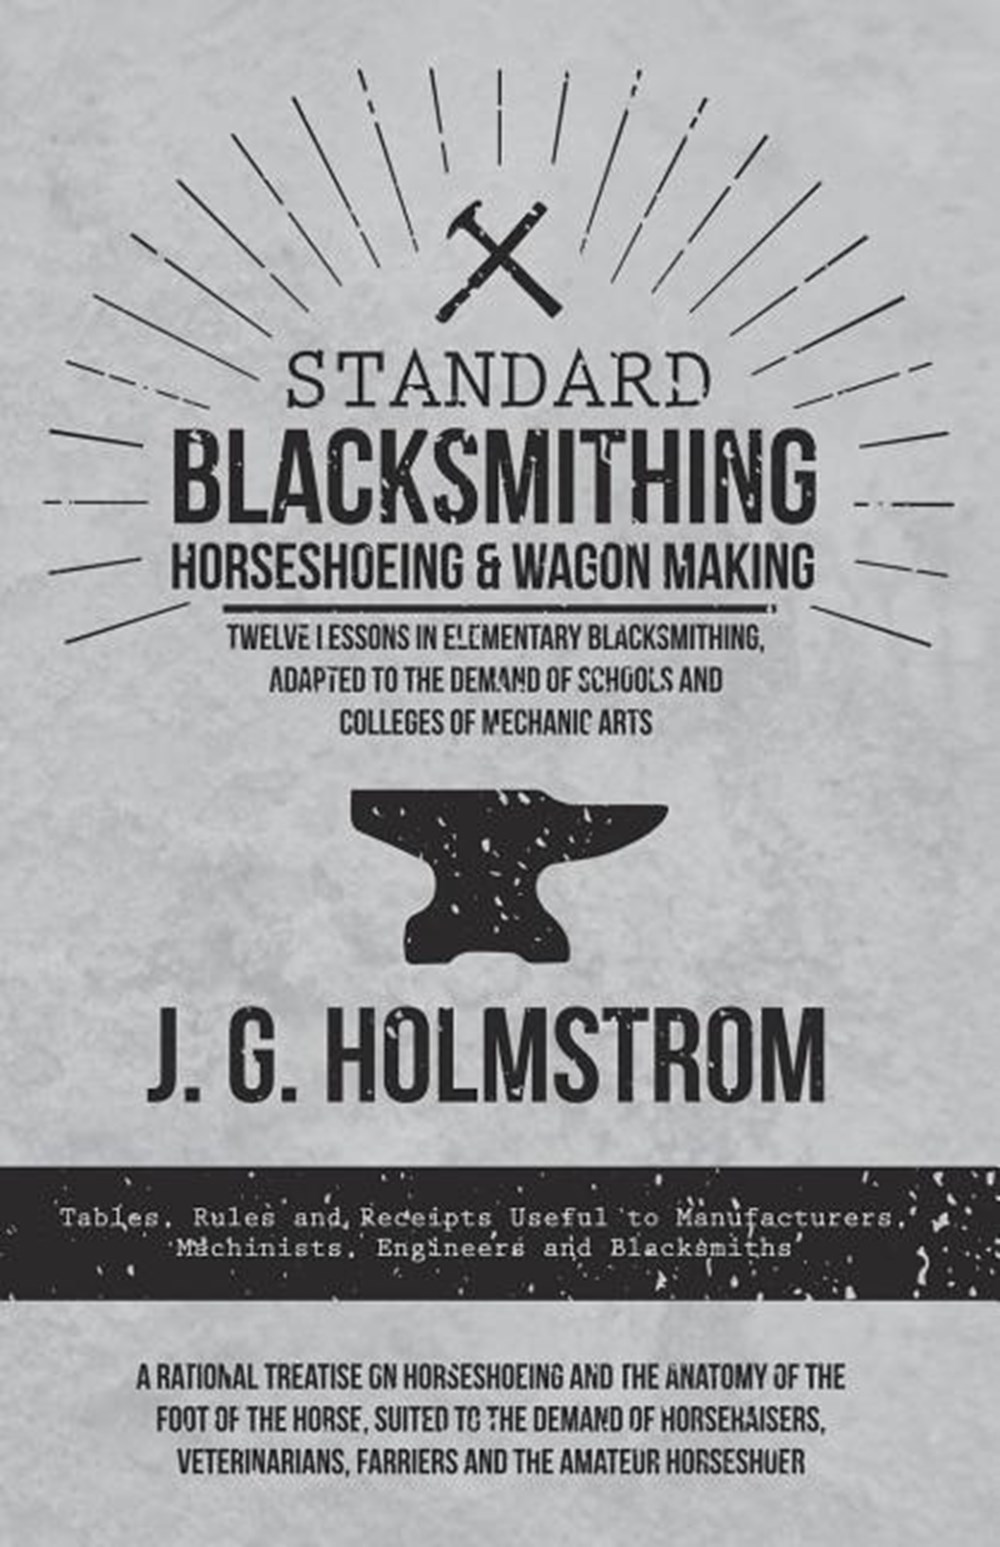 Standard Blacksmithing, Horseshoeing and Wagon Making - Twelve Lessons in Elementary Blacksmithing, 